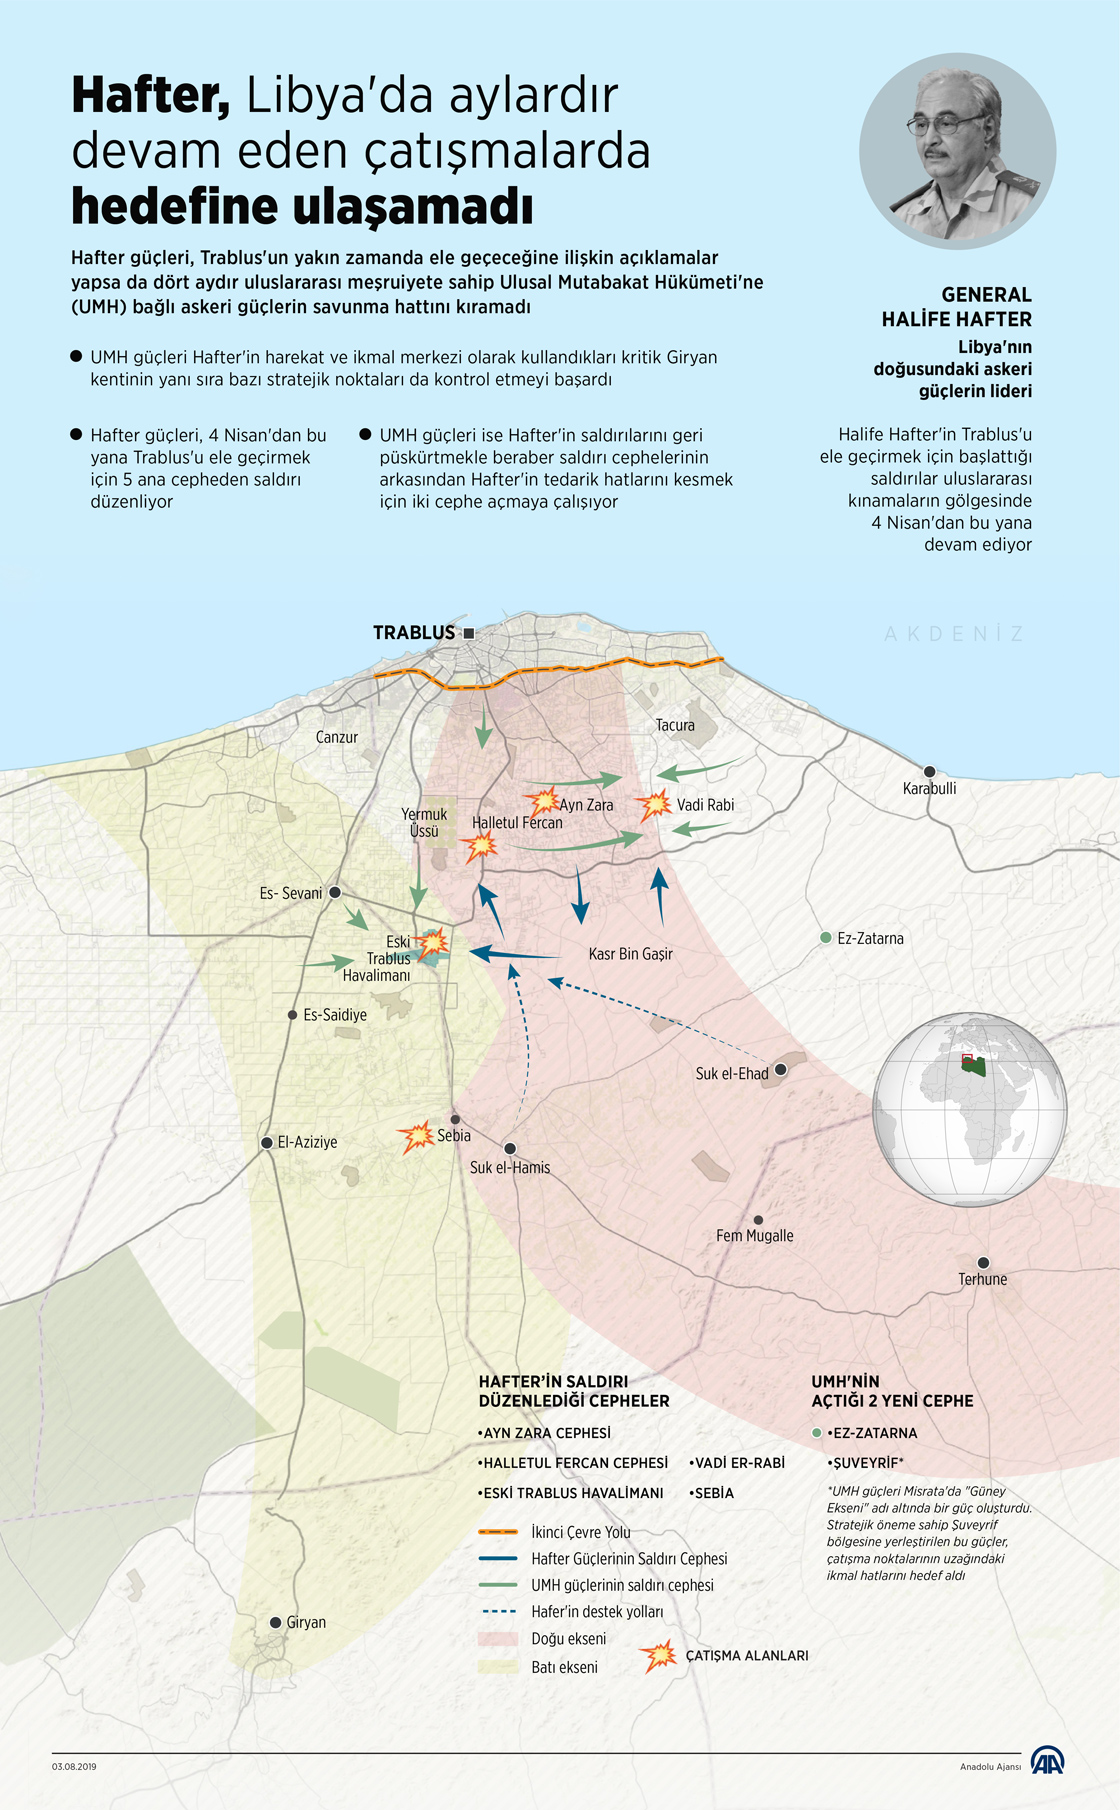 Hafter, Libya'da aylardır devam eden çatışmalarda hedefine ulaşamadı